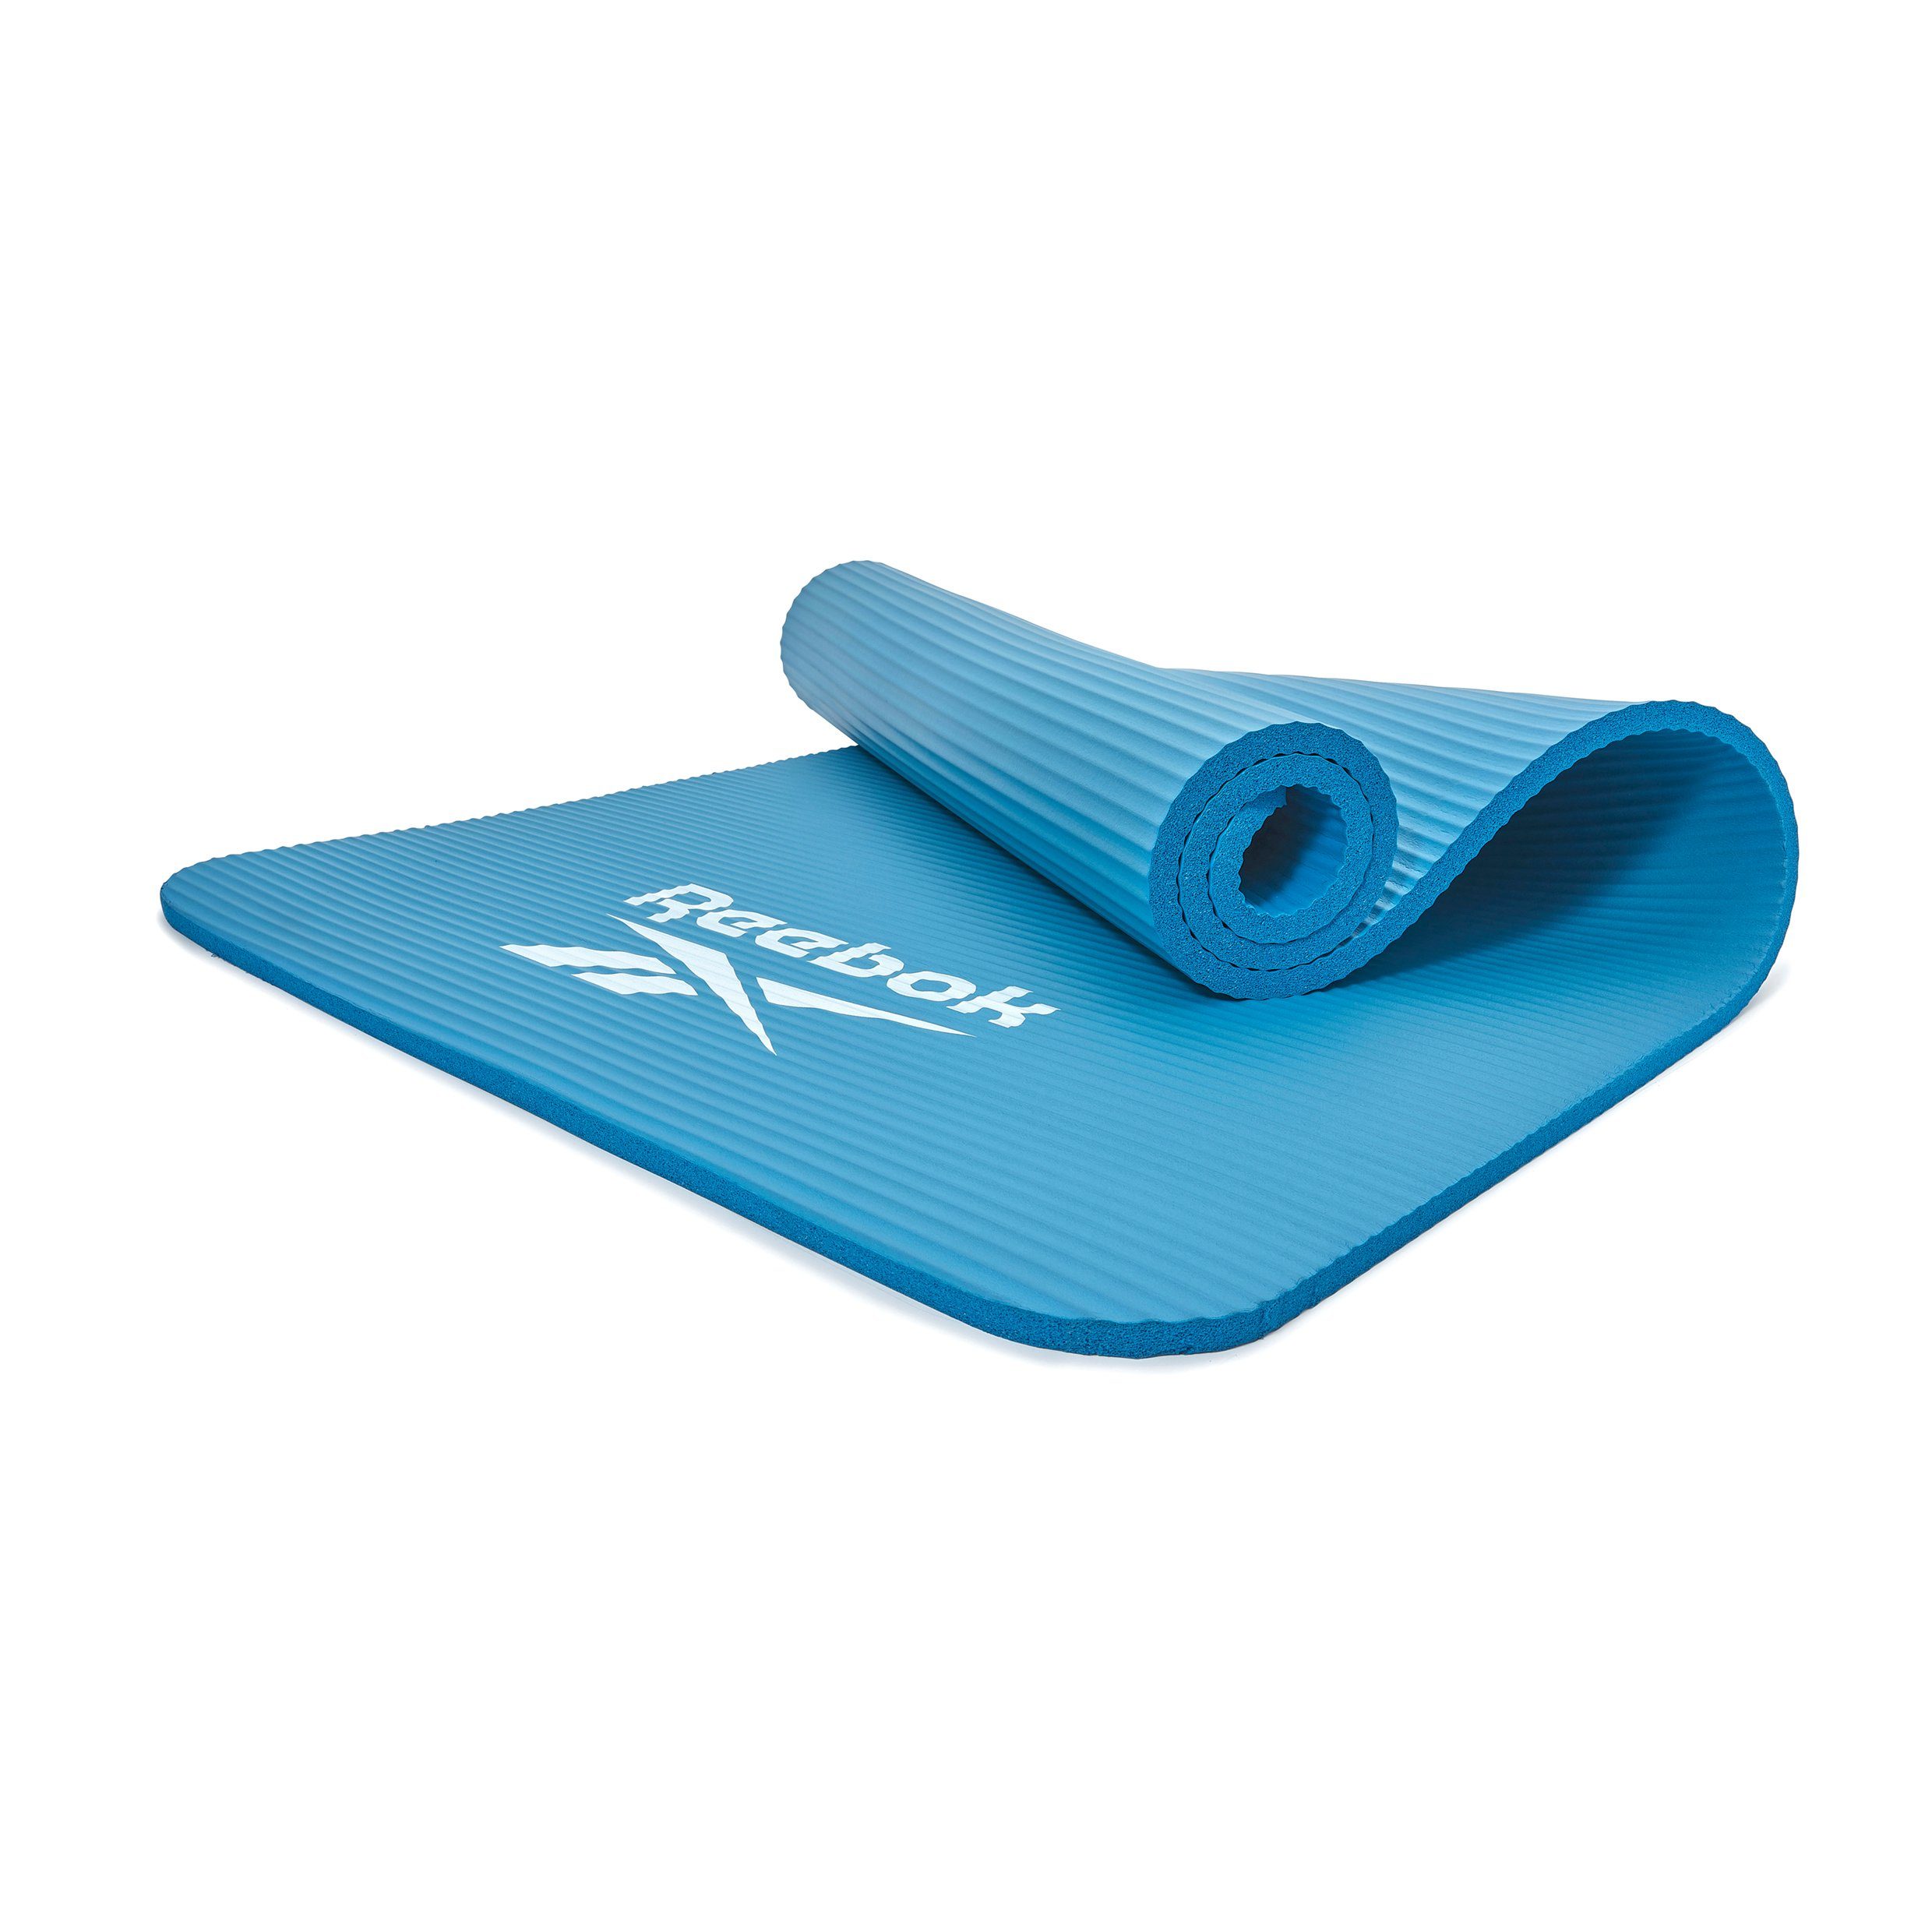 Reebok Fitnessmatte Reebok Fitness-/Trainingsmatte, 15mm, Oberfläche blau Rutschfeste